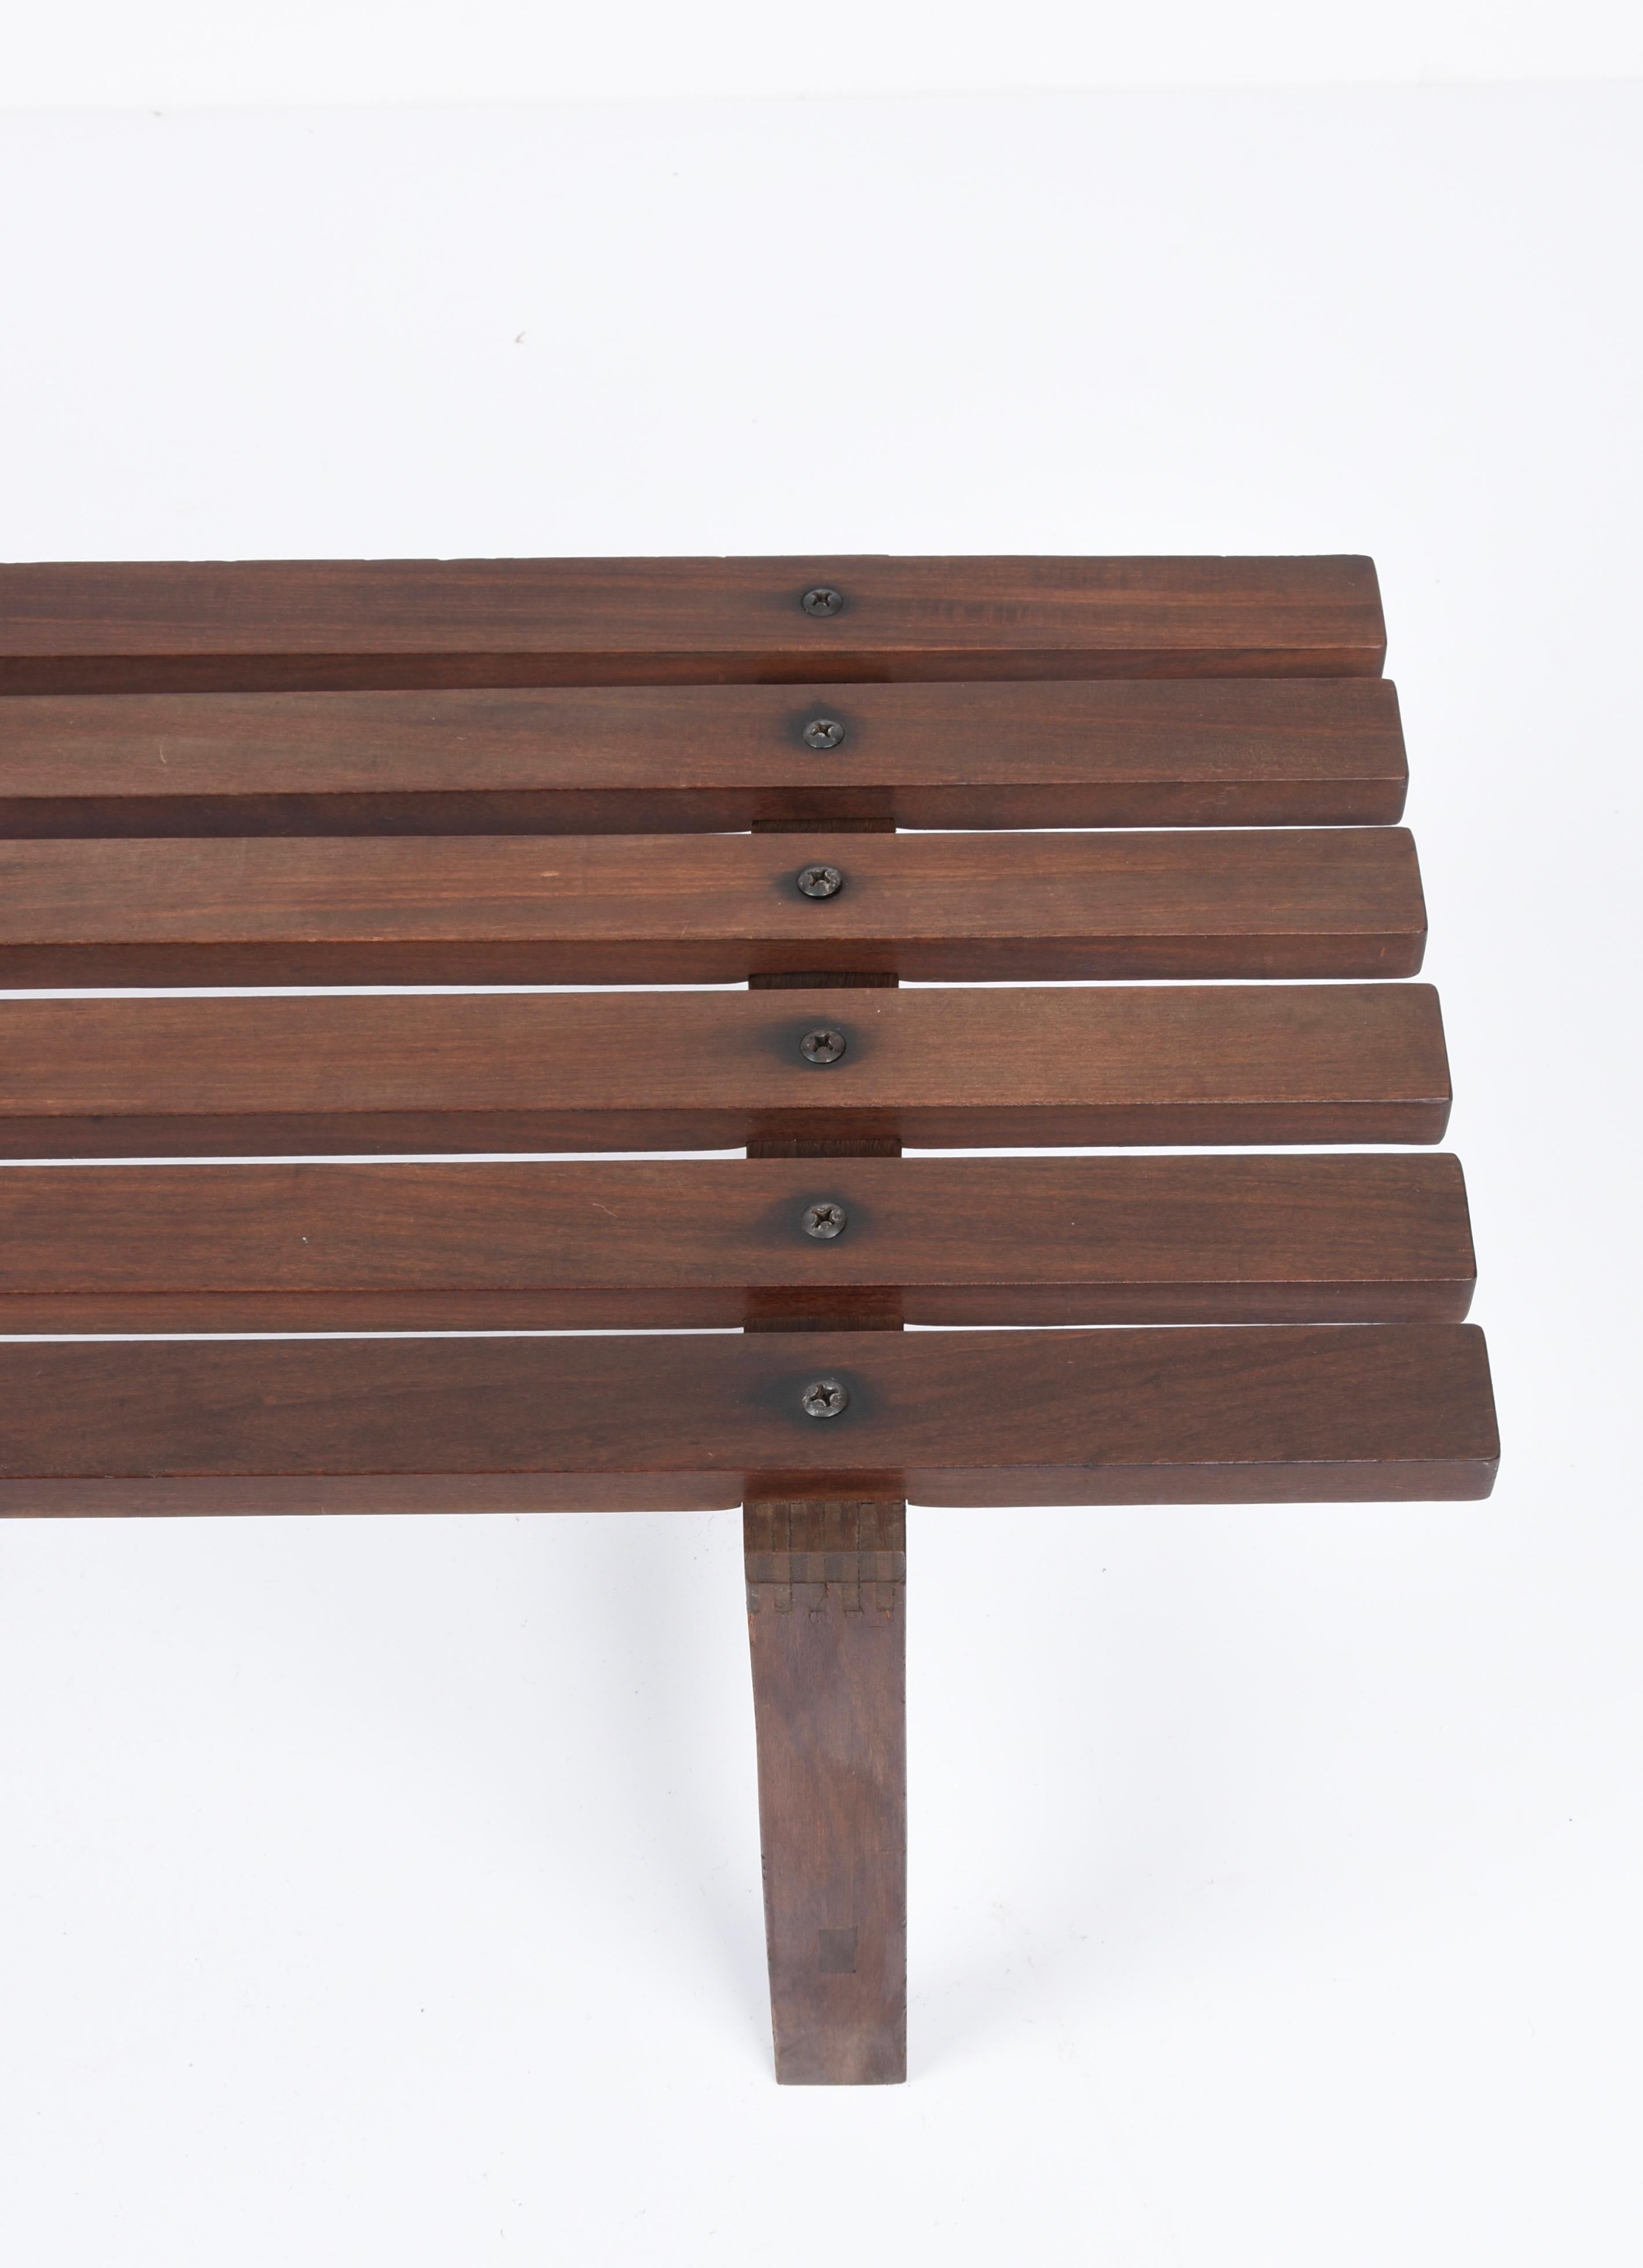 Midcentury Scandinavian Dark Brown Teak Wood Bench, 1960s For Sale 7